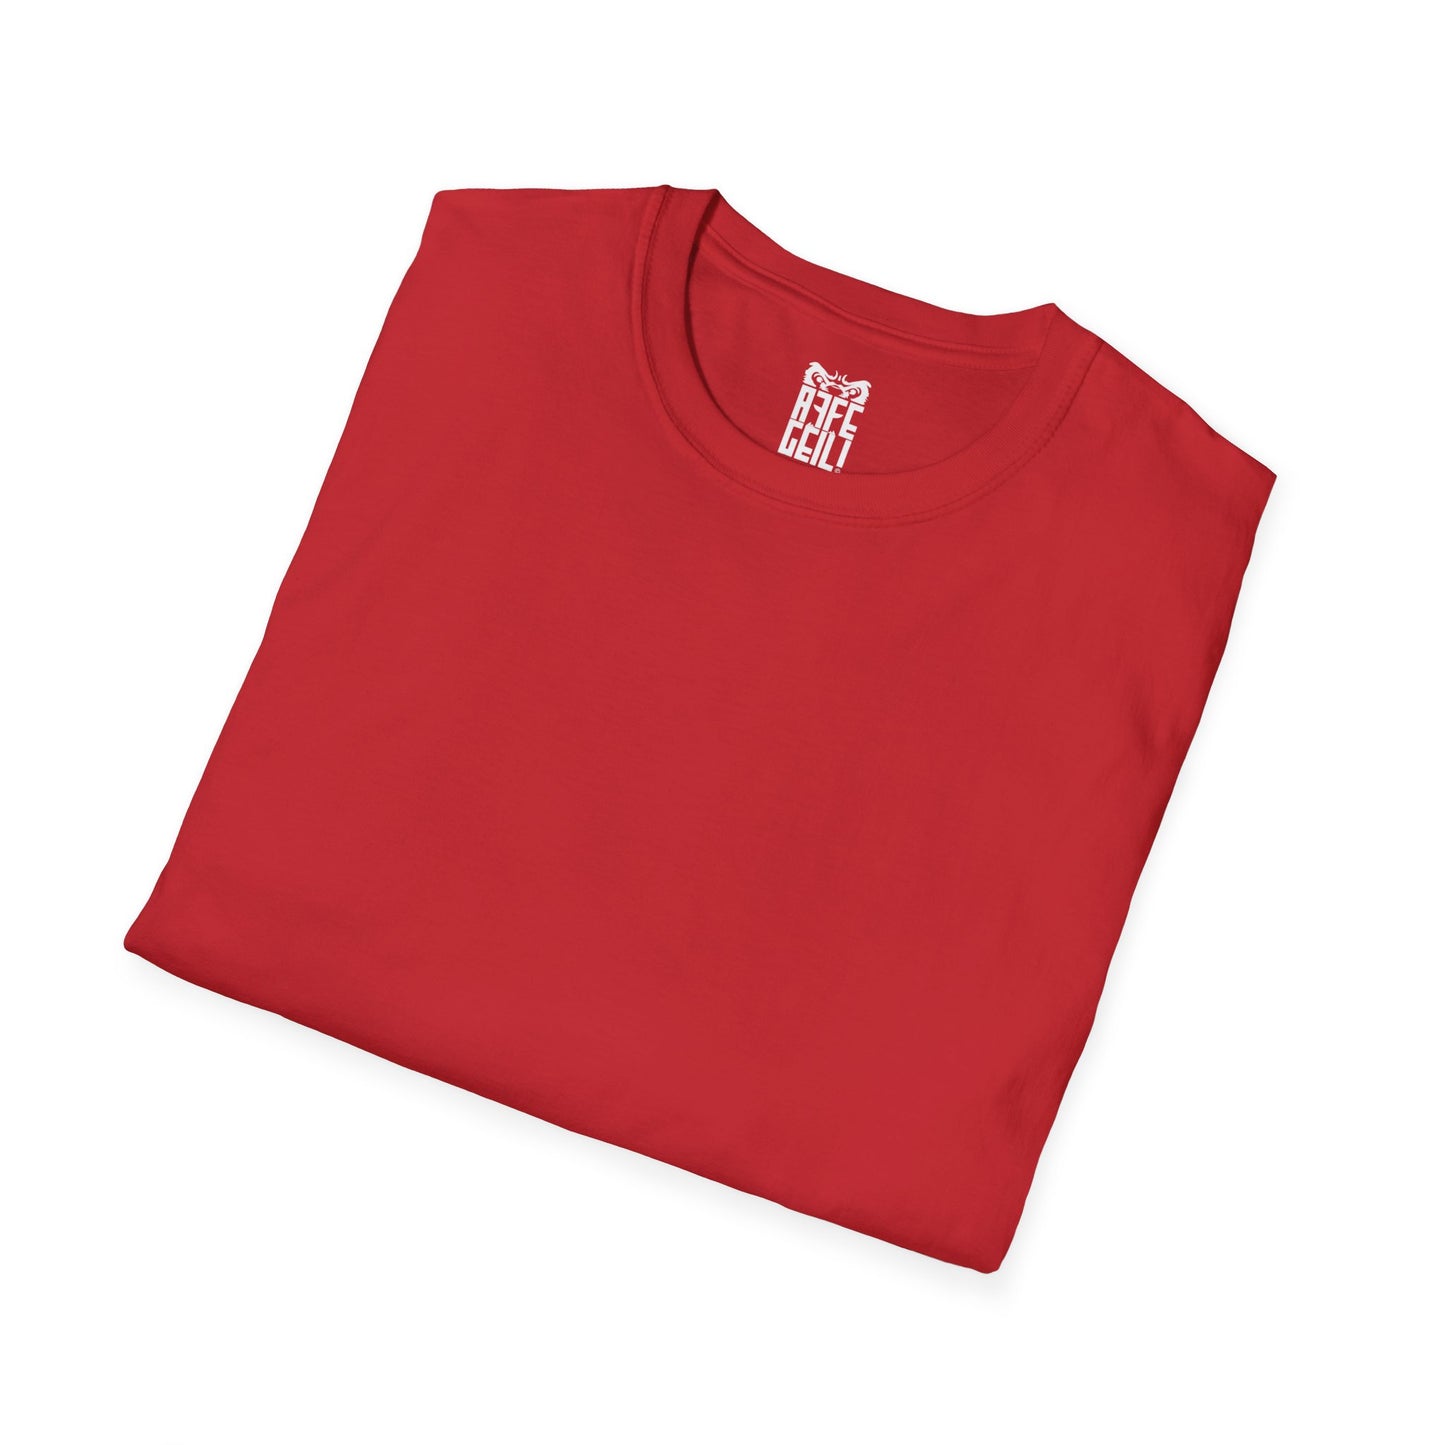 AFFEGEIL mit Ärmeldruck - Unisex Softstyle T-Shirt